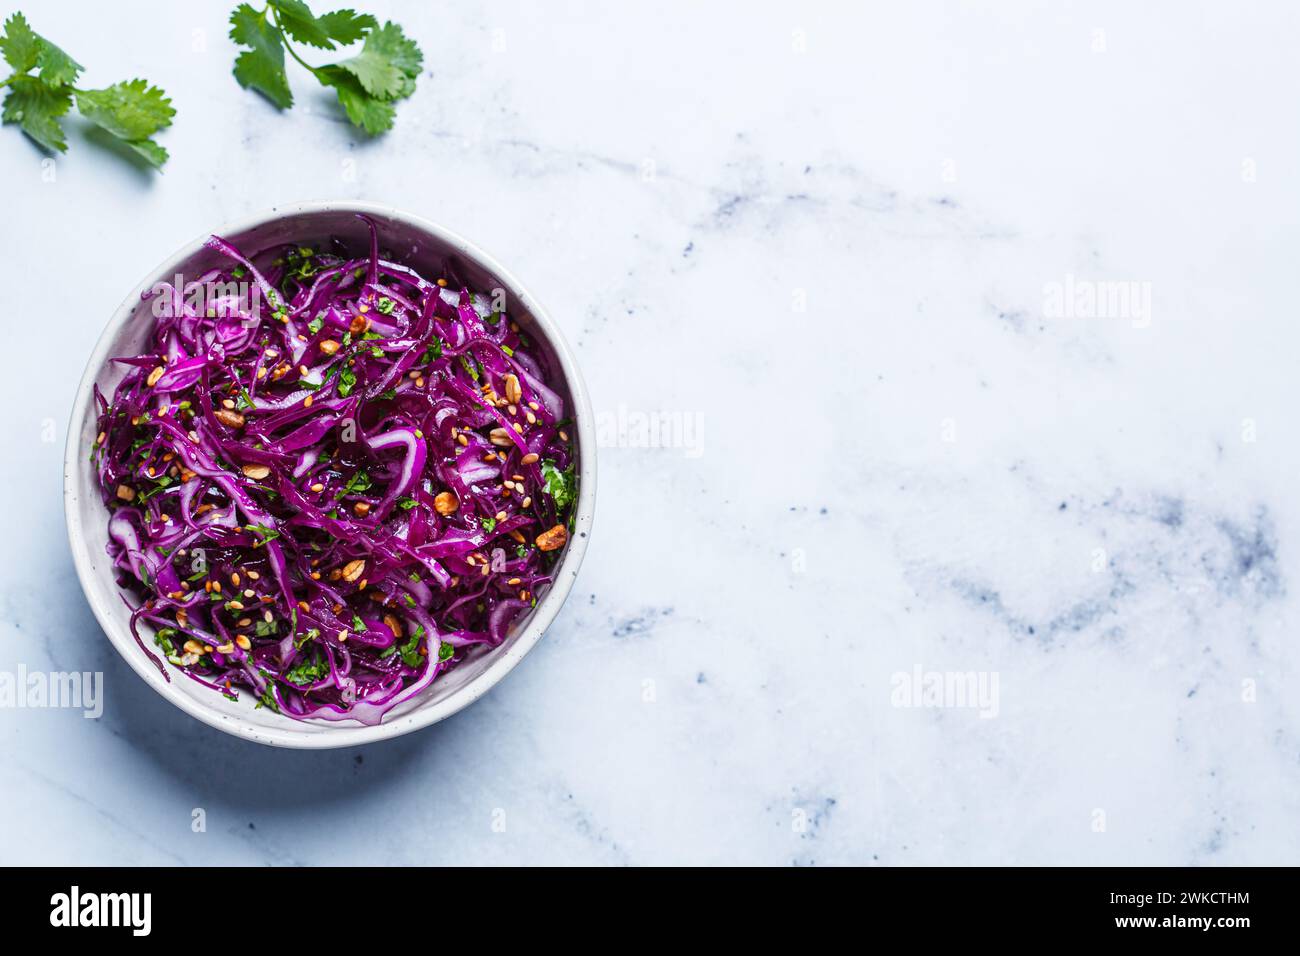 Salade de coleslaw violette avec coriandre et noix, vue de dessus. Recette de détox végétalienne. Banque D'Images